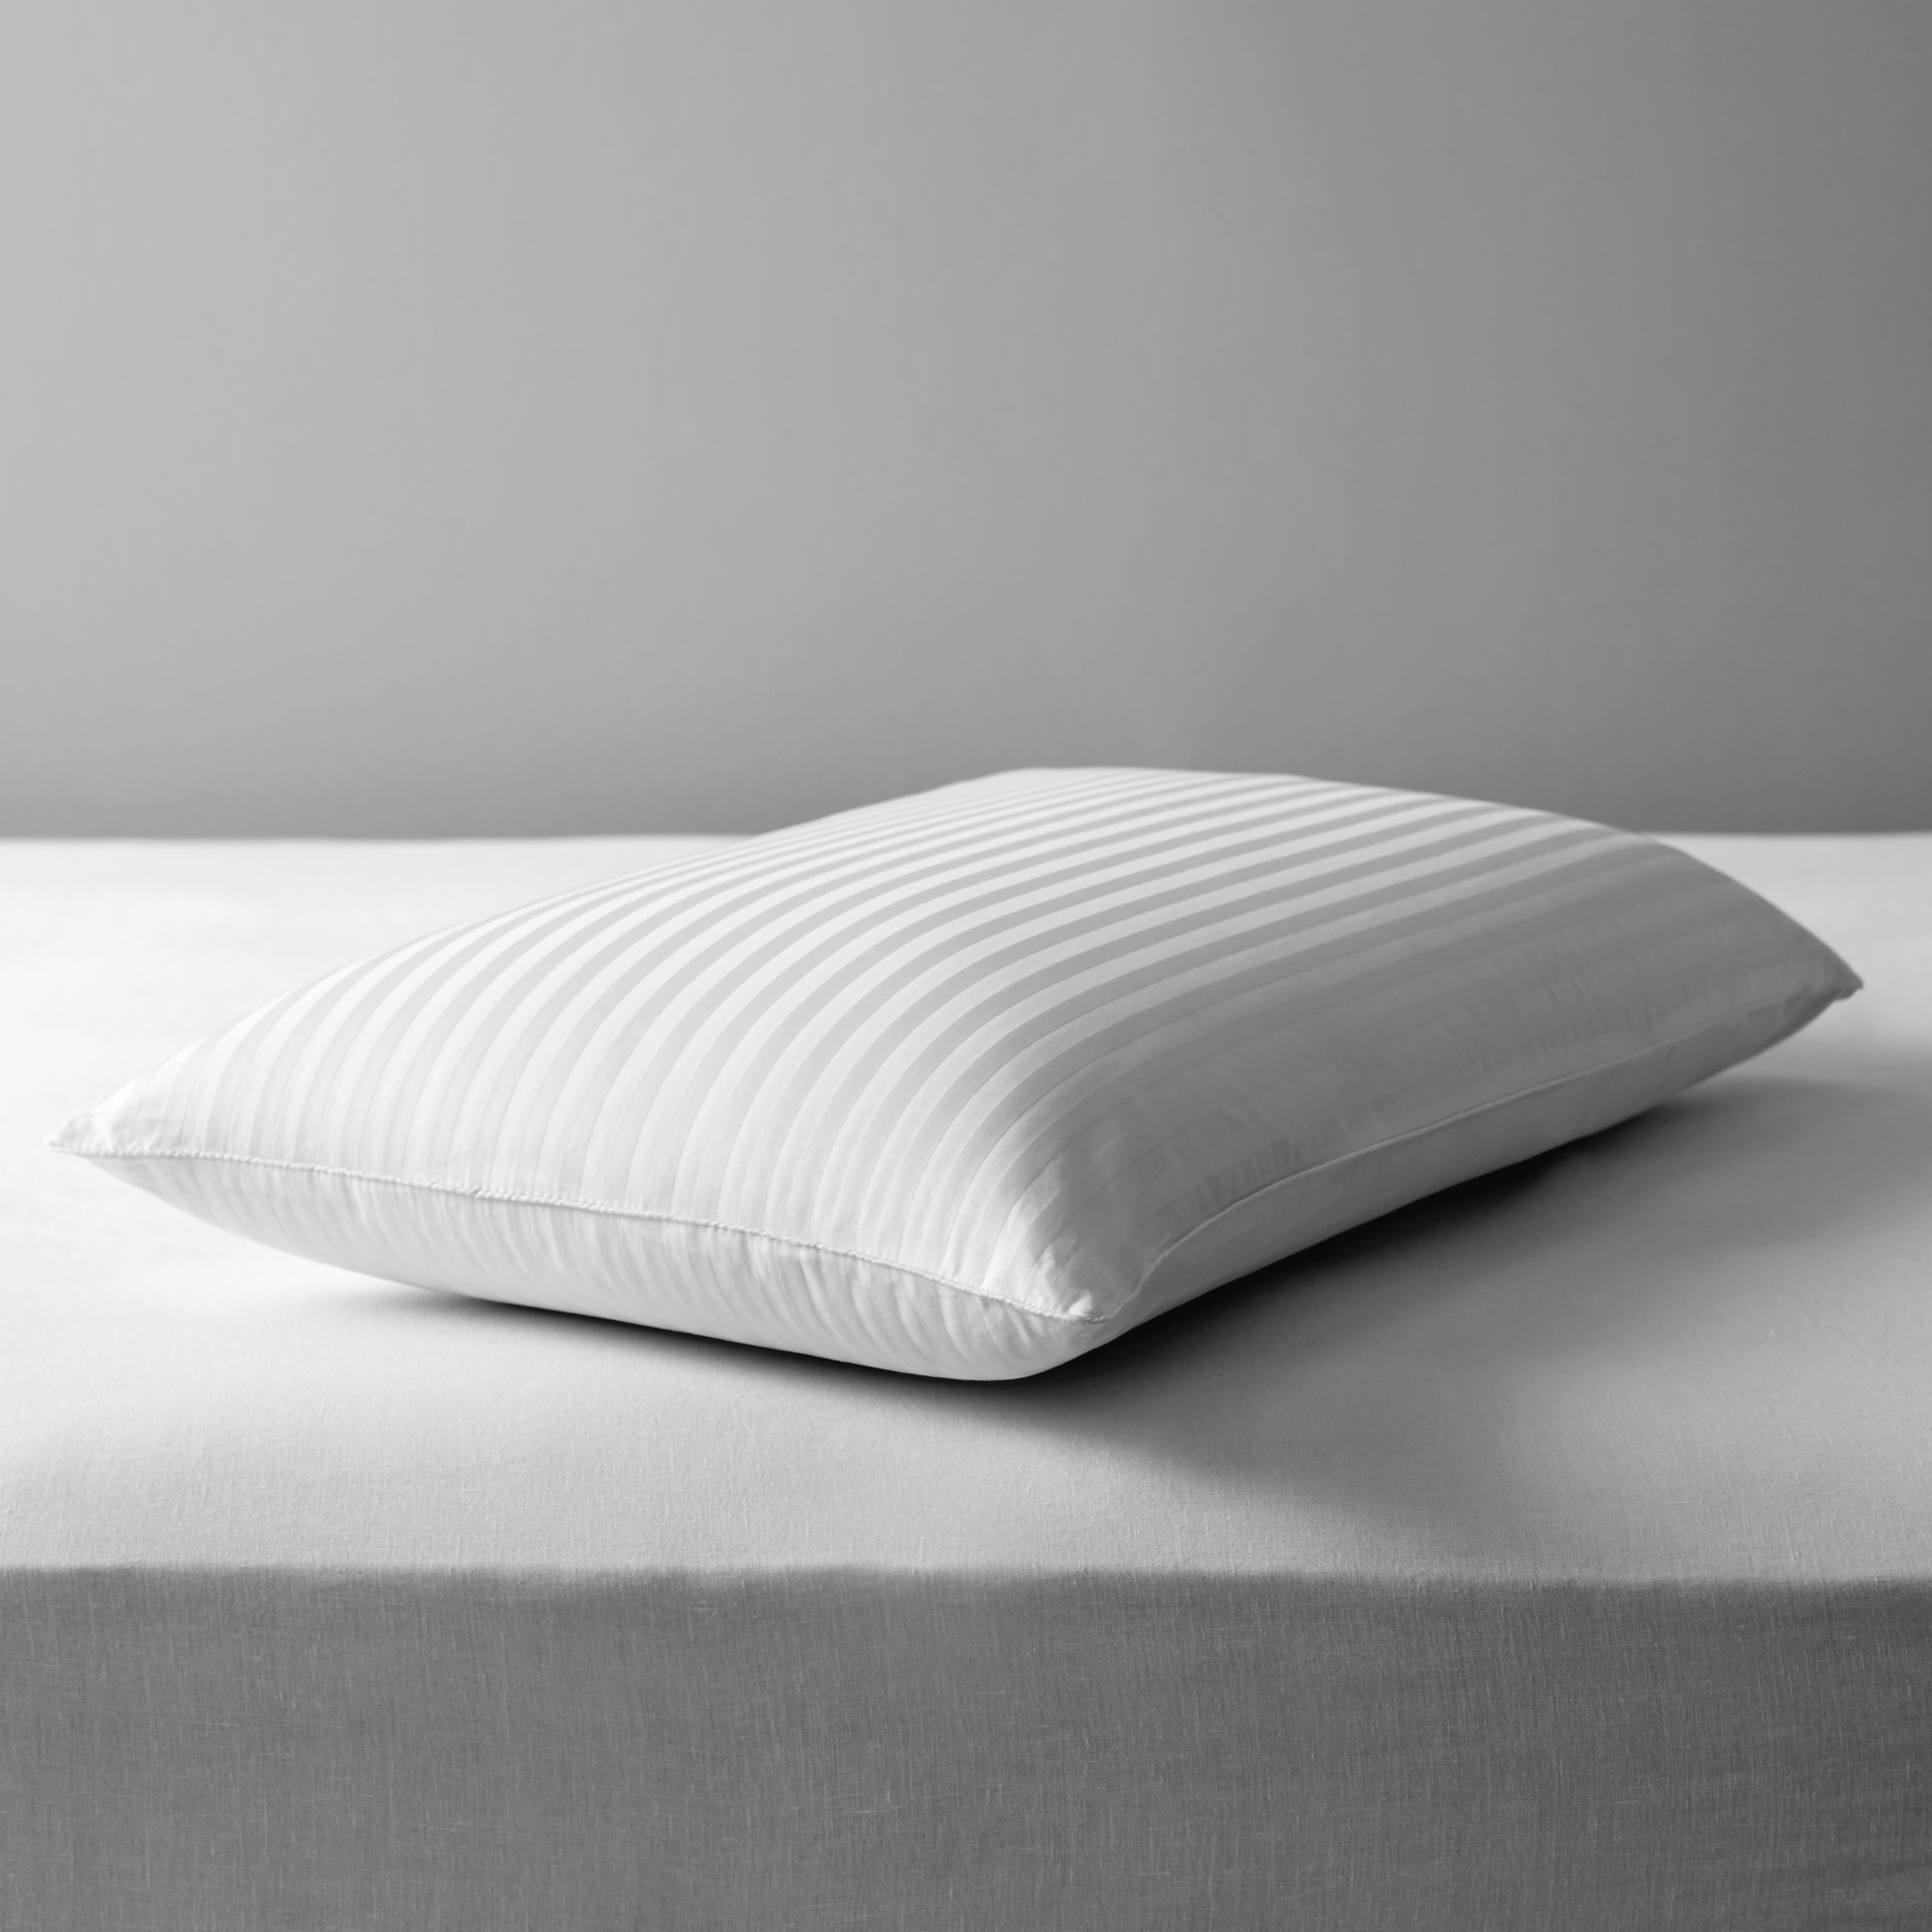 dunlop latex foam pillow